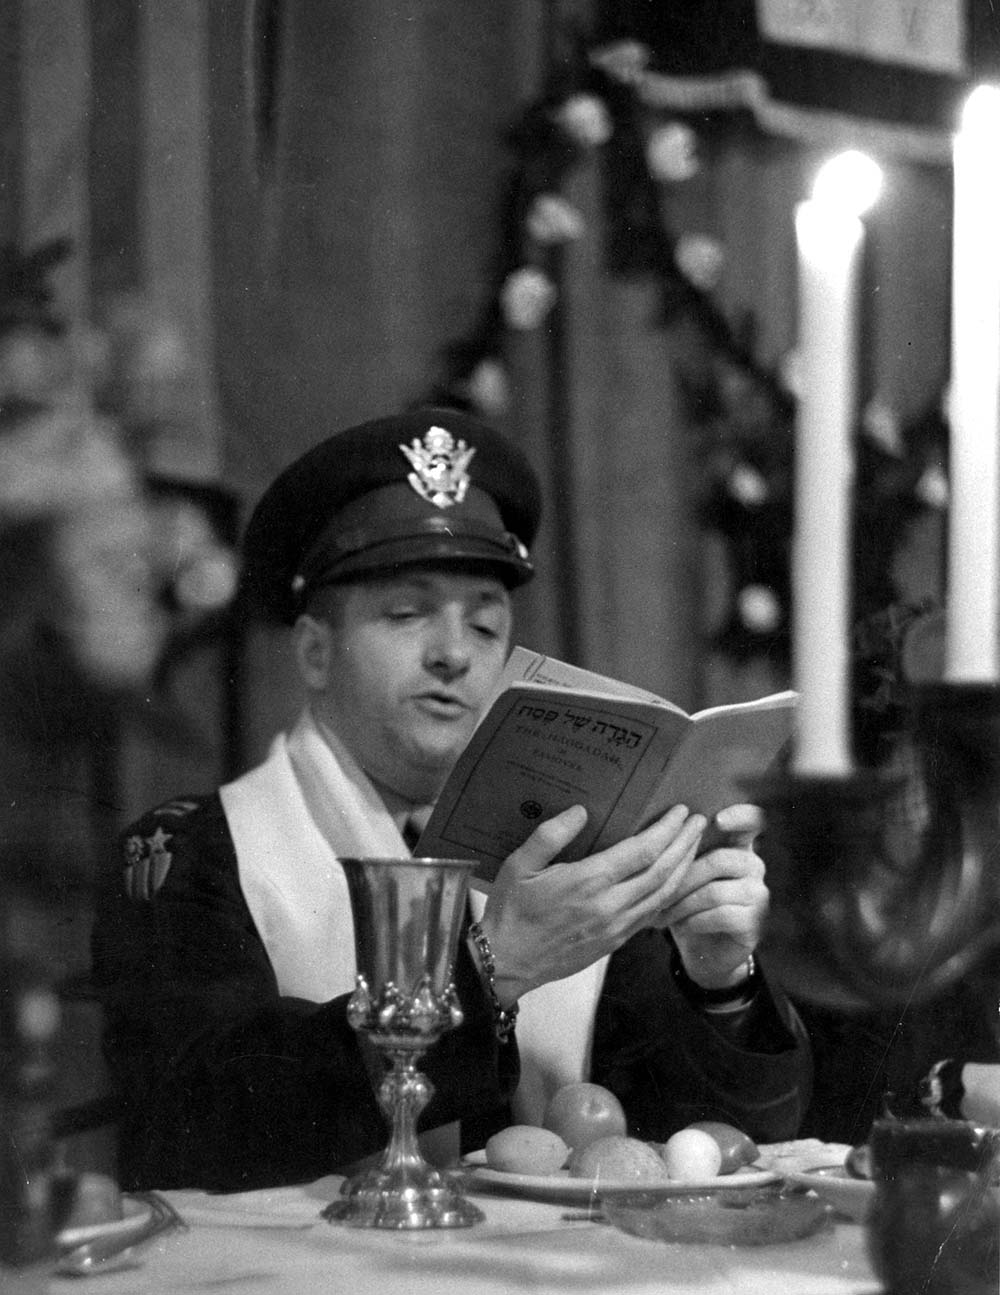 Rabbi Dalin reading from the Haggada at a Passover Seder at the American Airforce base, Frankfurt am Main, Germany, postwar